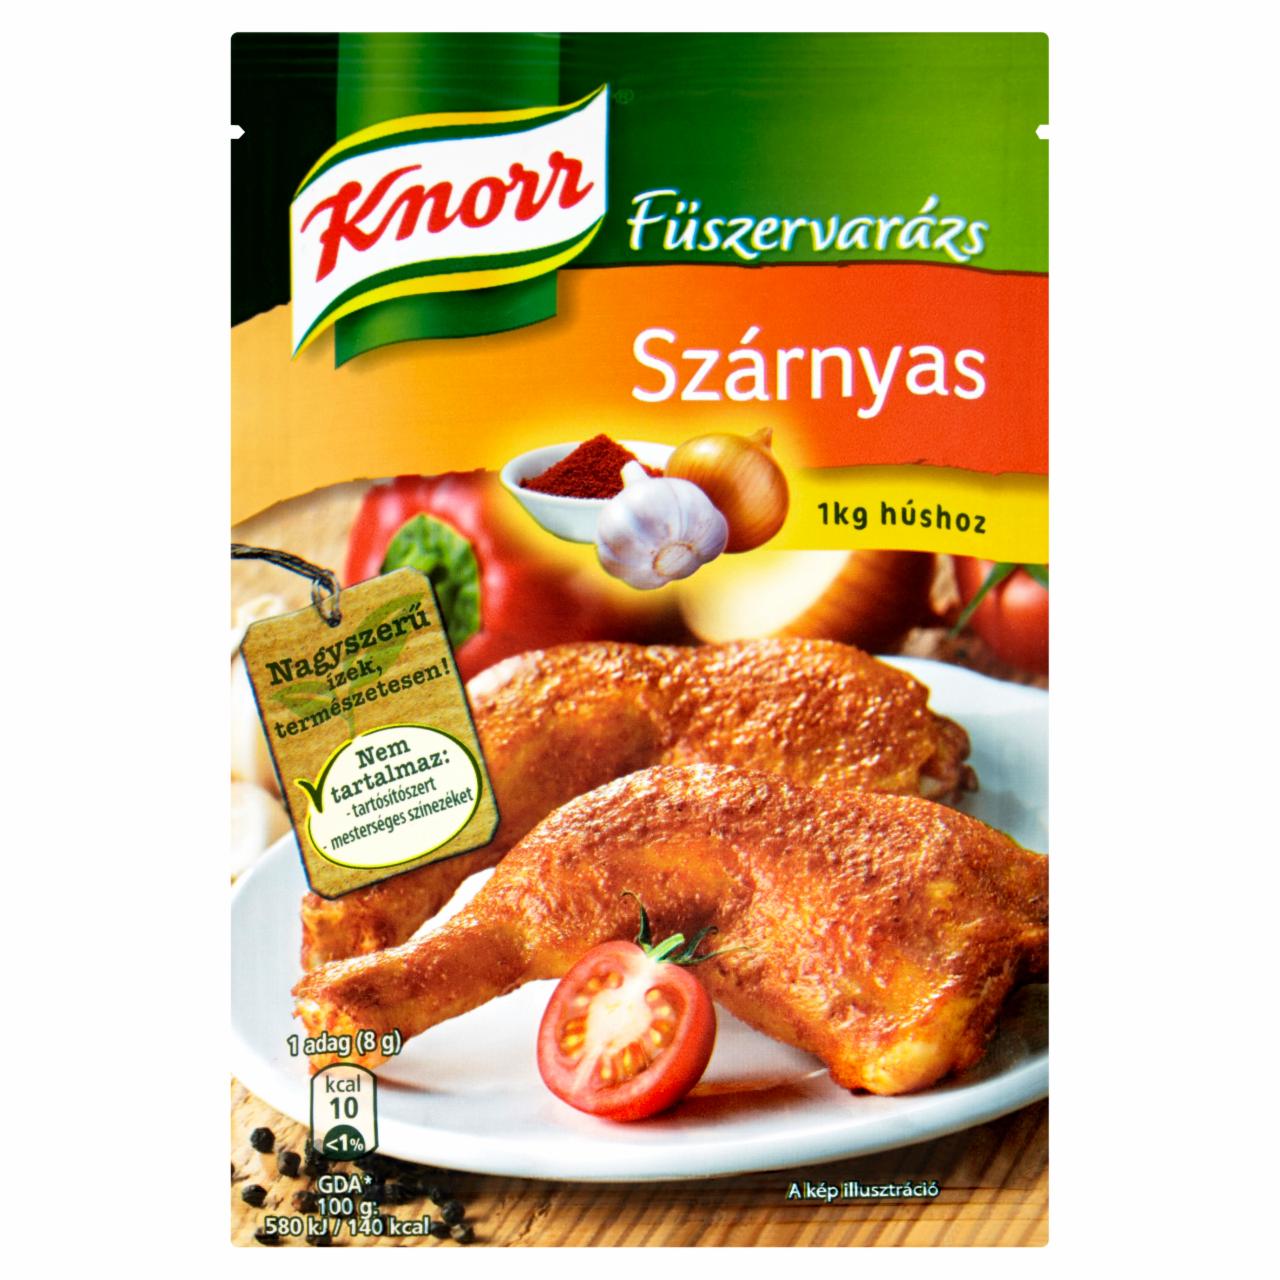 Képek - Knorr Fűszervarázs szárnyas fűszerkeverék 40 g